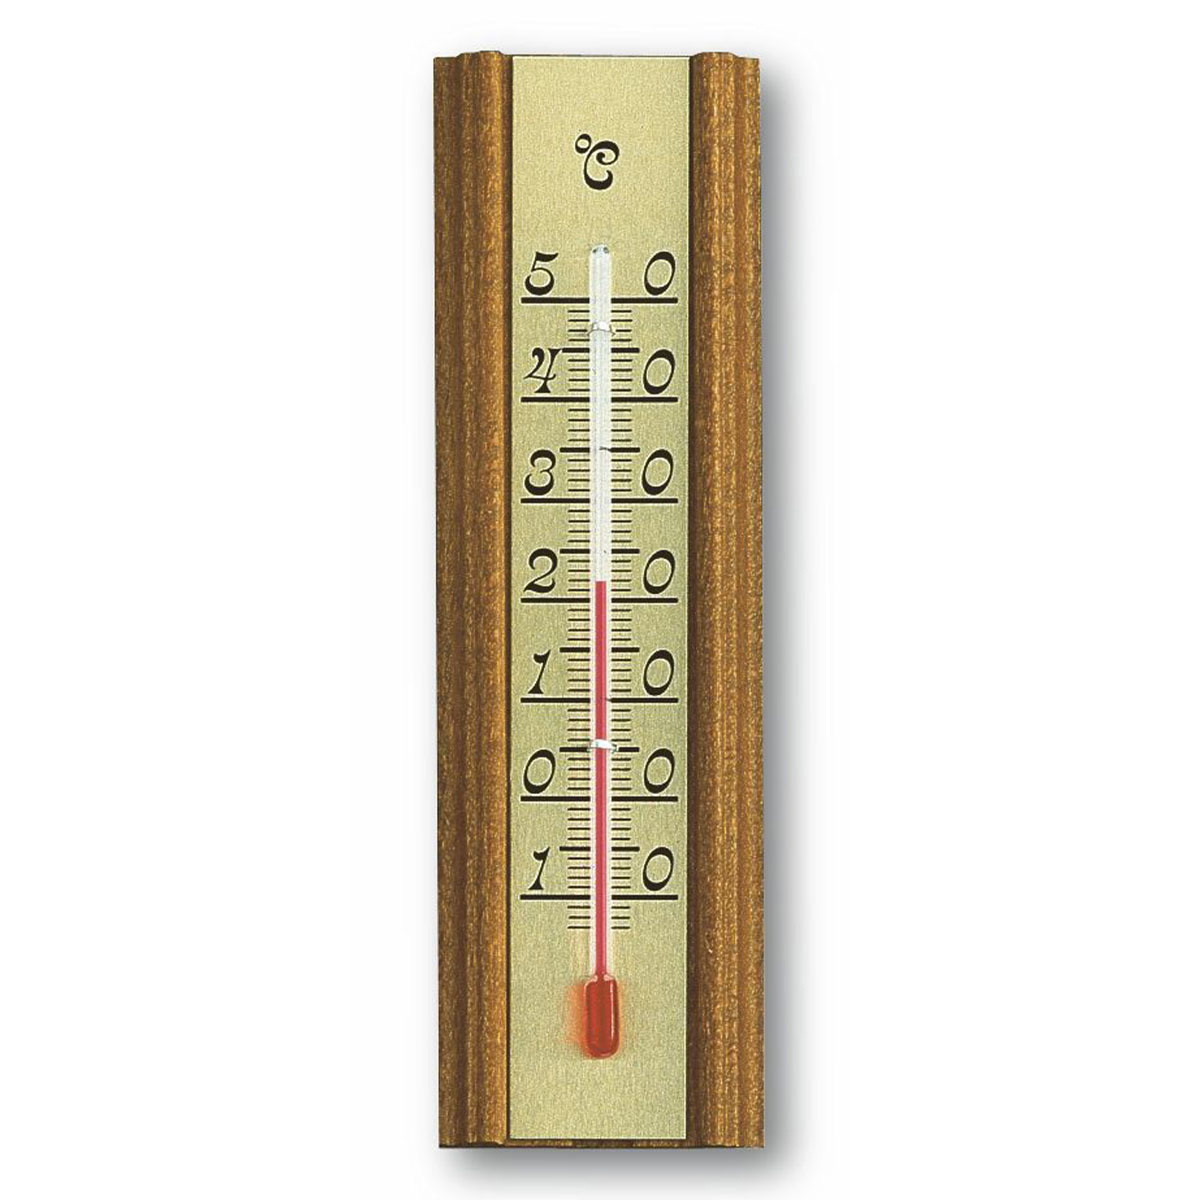 12-1014-analoges-innen-aussen-thermometer-eiche-1200x1200px.jpg